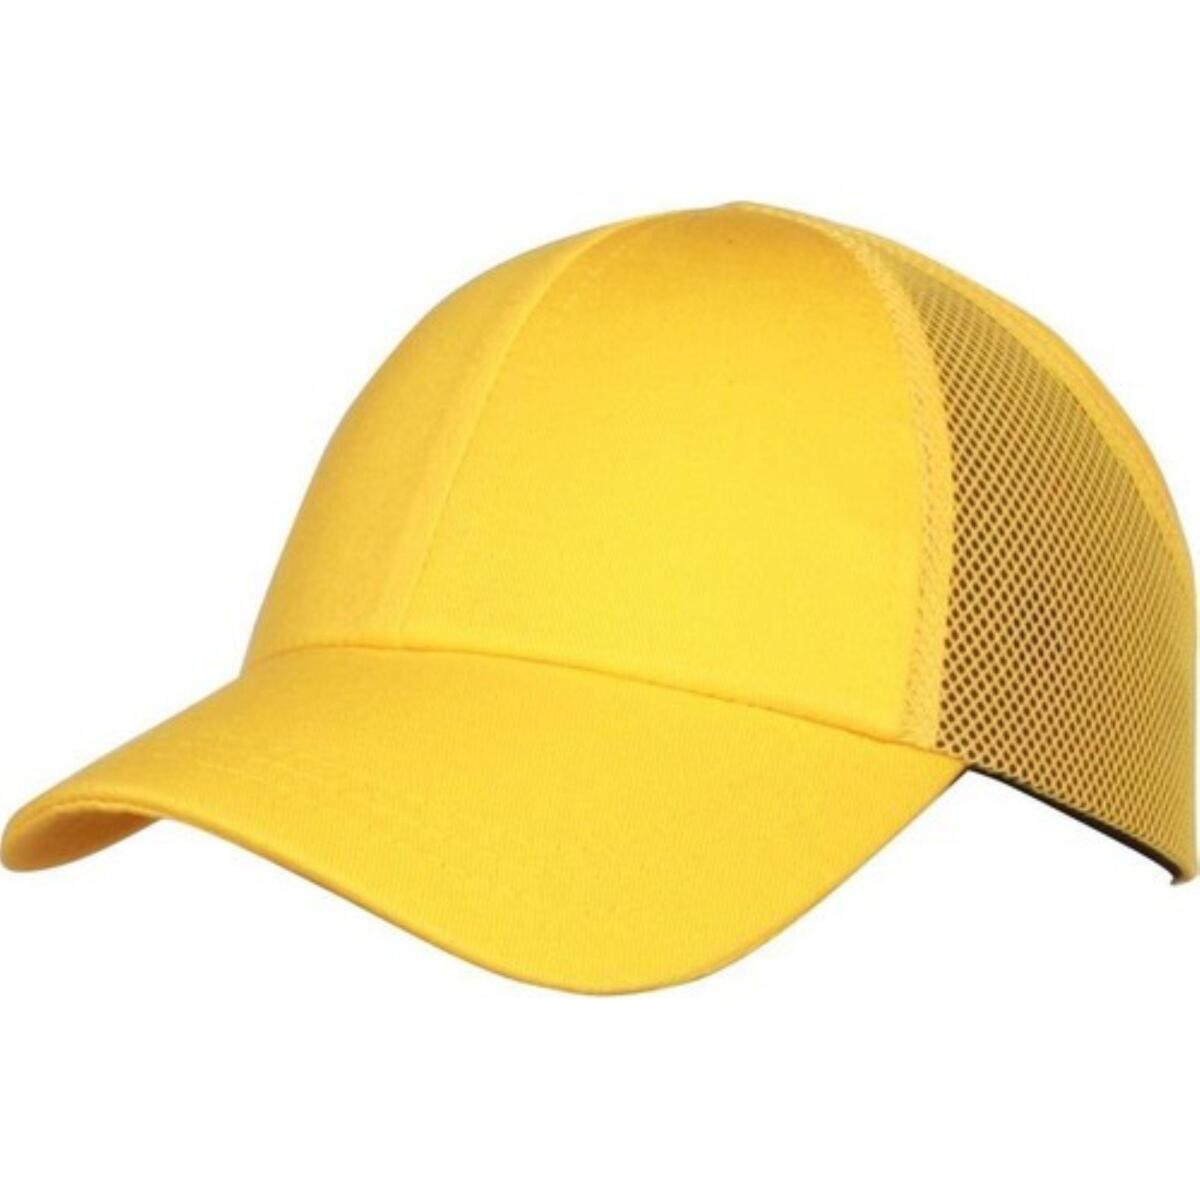 Iş Güvenliği Koruyucu Darbe Emici Top Kep Şapka Baret Sarı